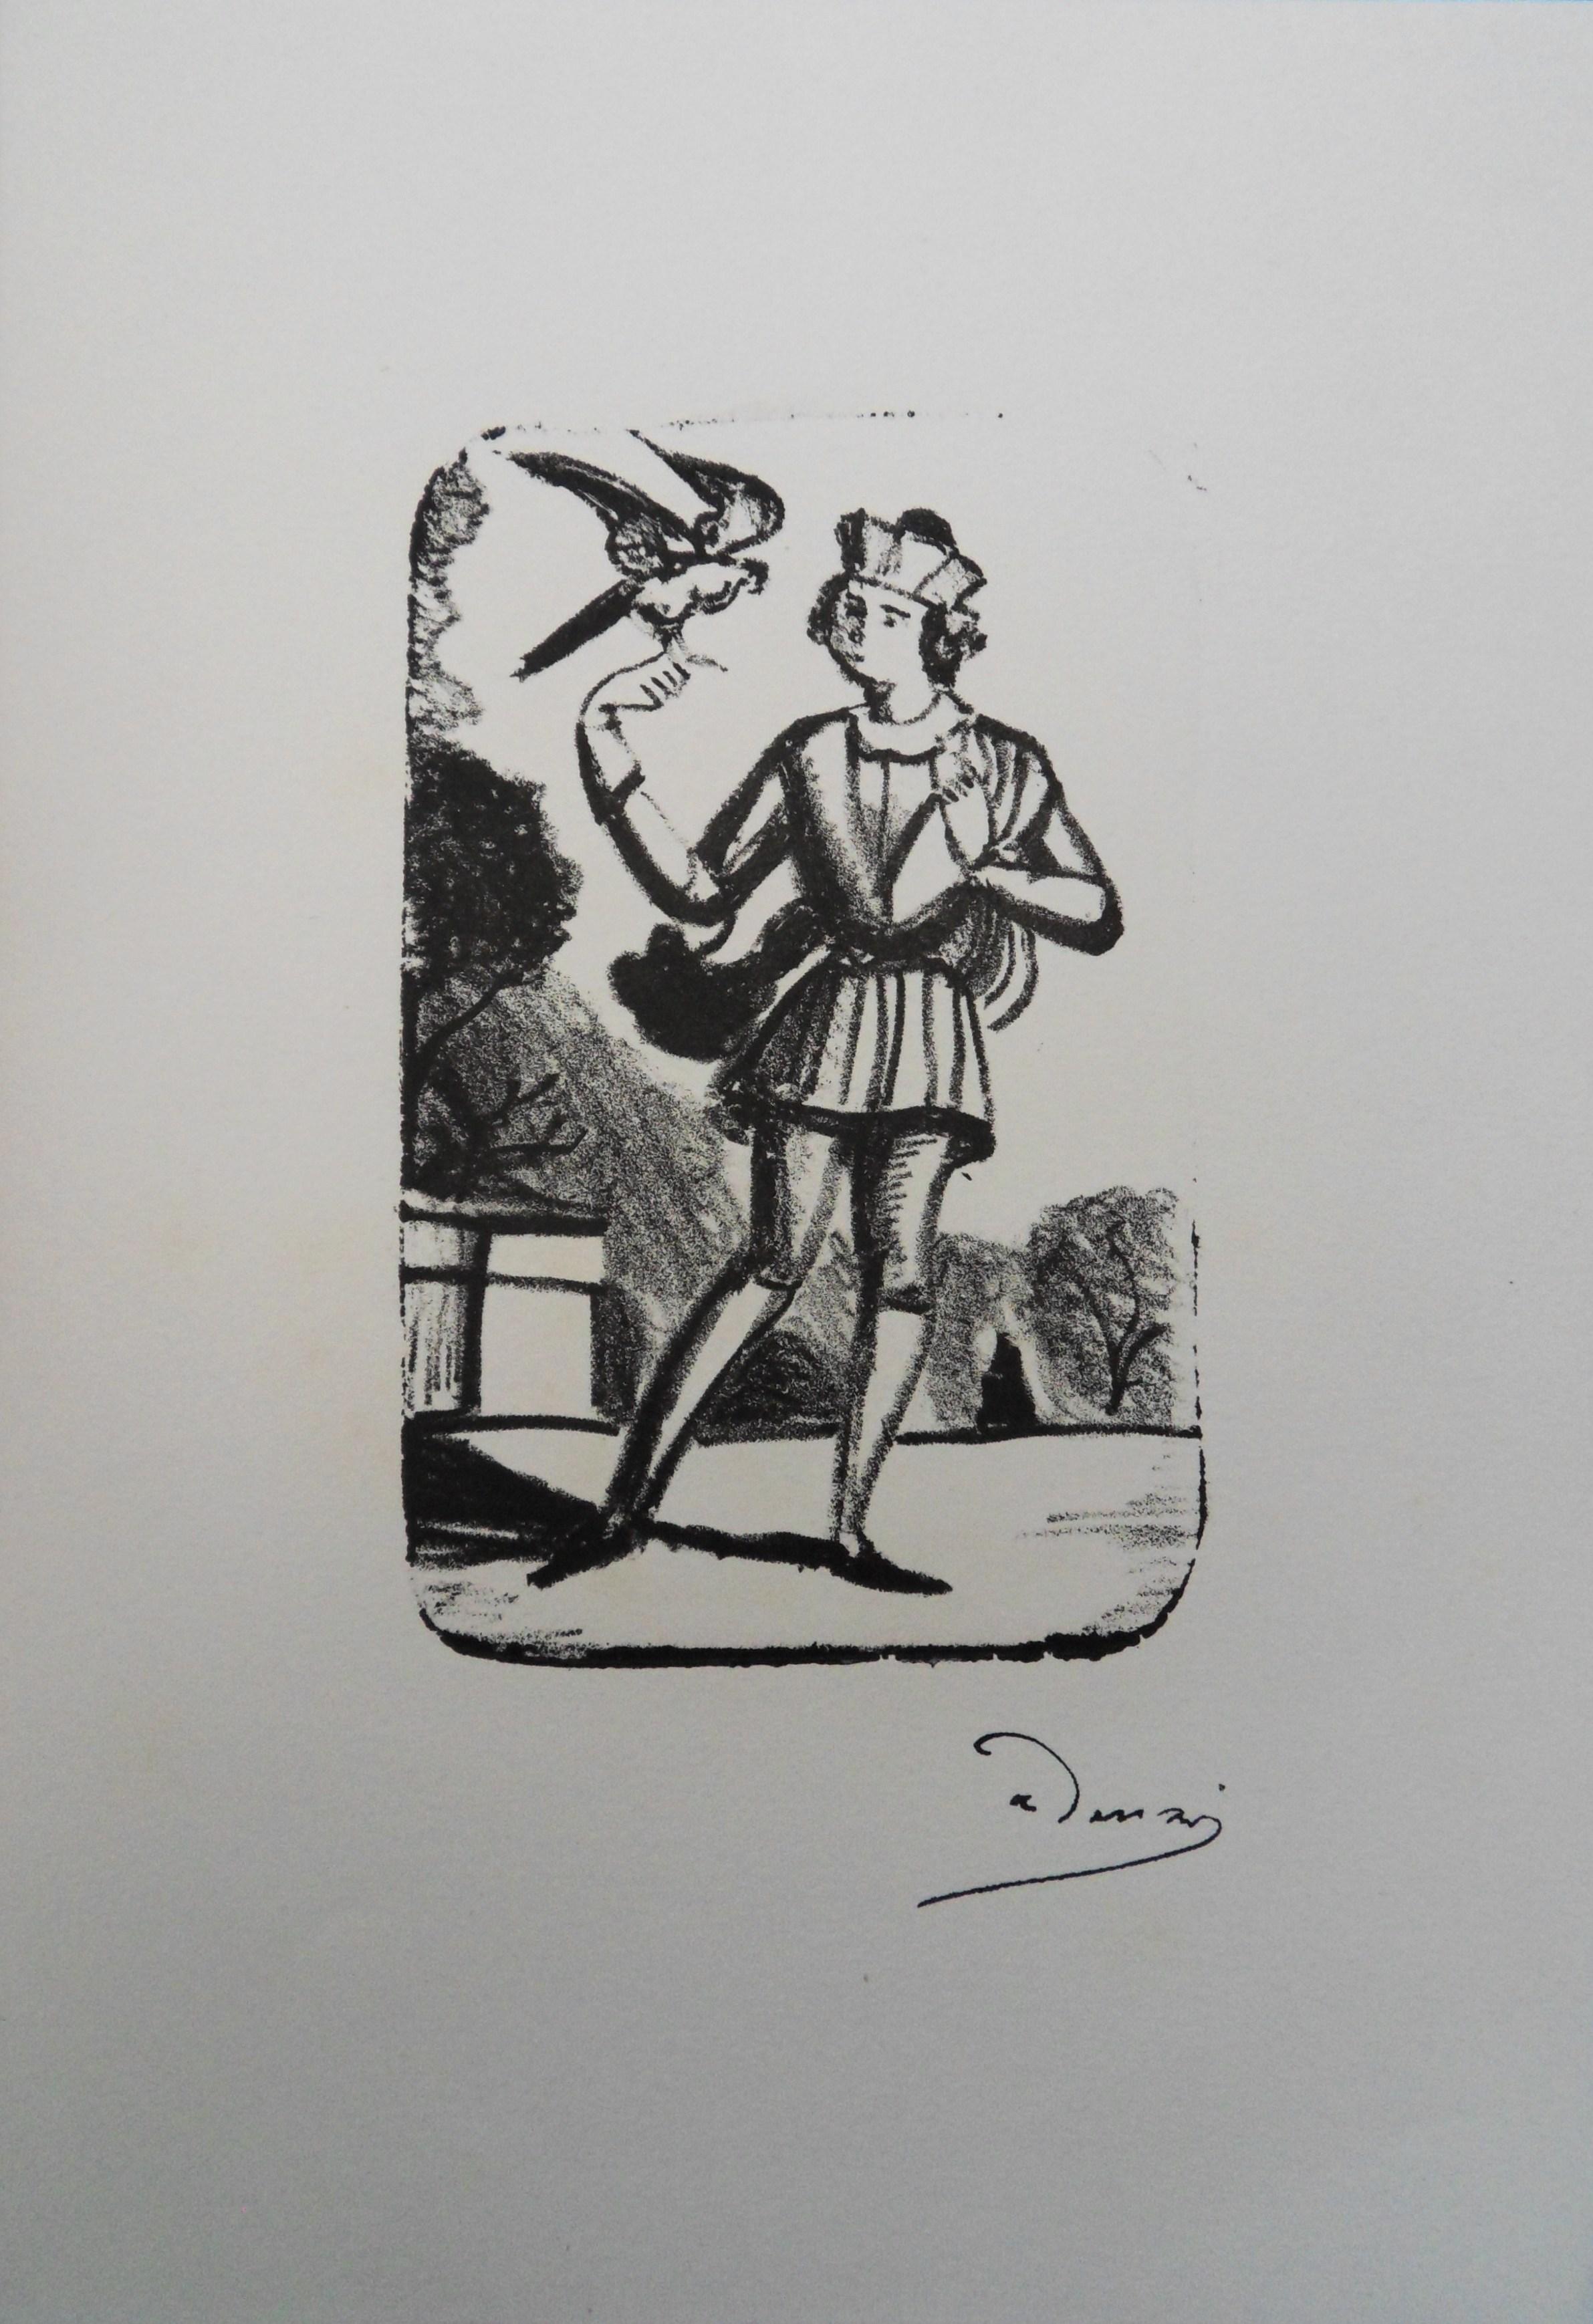 The Messenger - Original lithograph, Mourlot 1950 - Print by André Derain